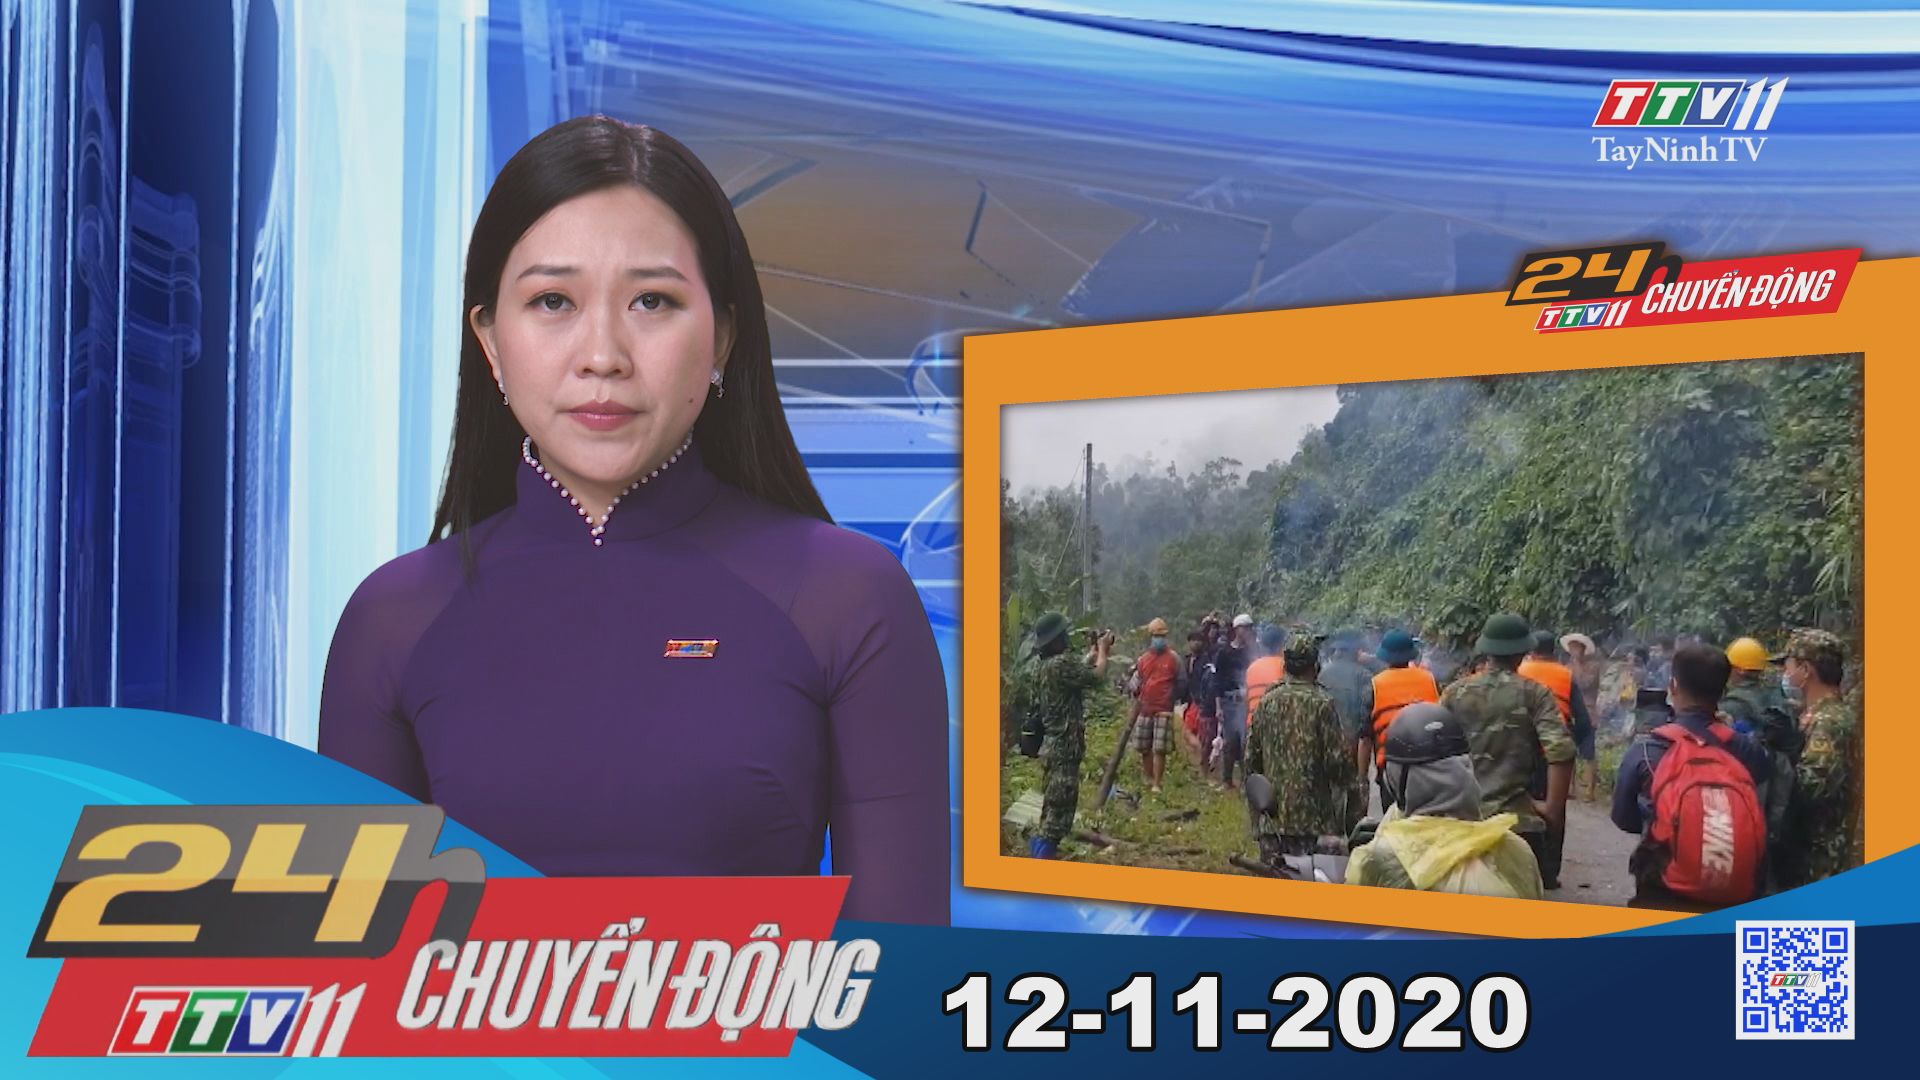 24h Chuyển động 12-11-2020 | Tin tức hôm nay | TayNinhTV 